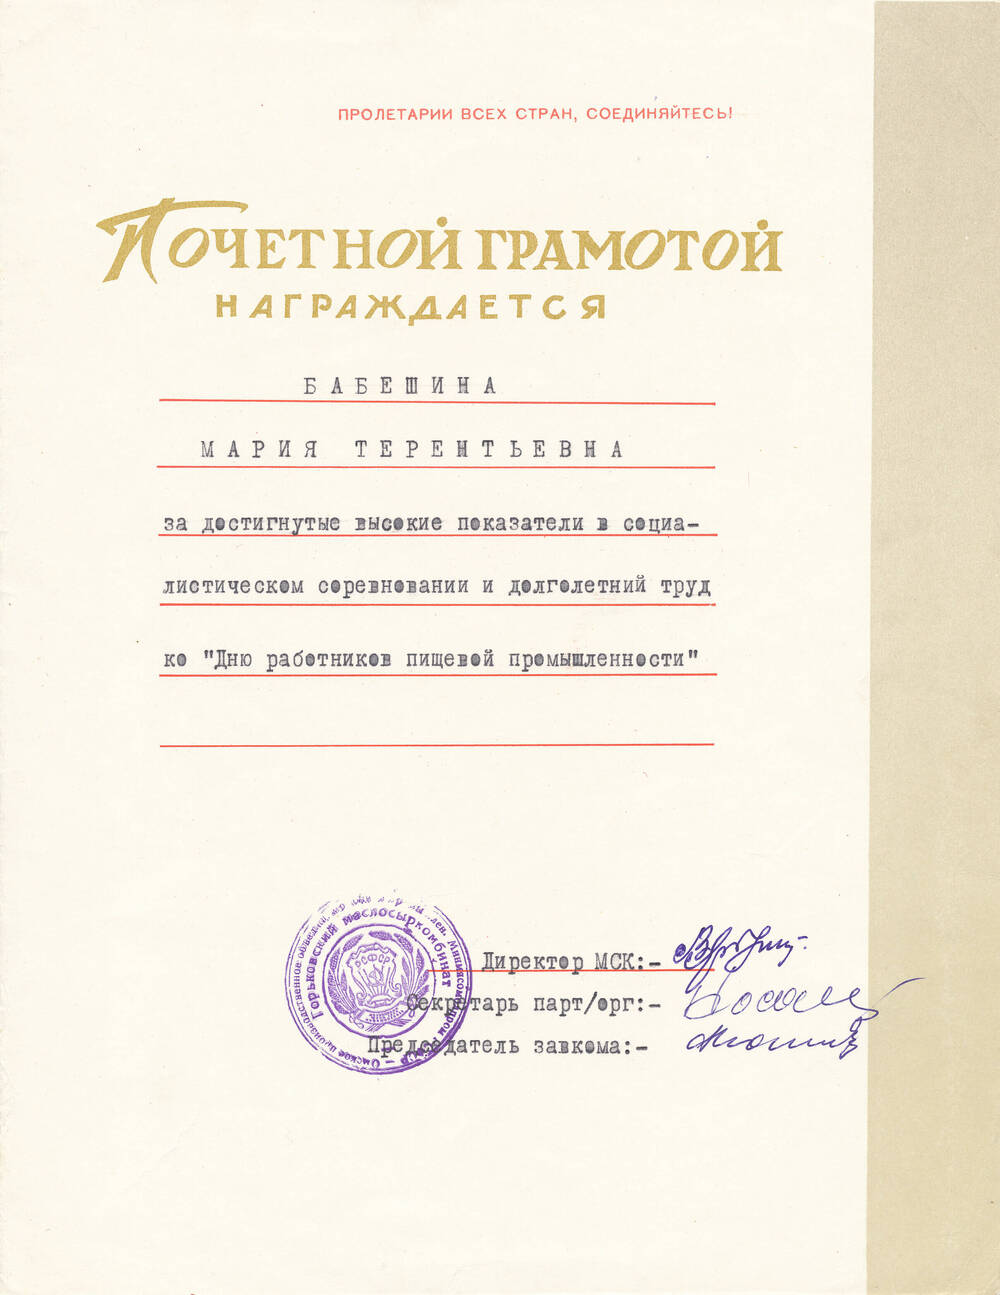 Почетная грамота Бабешкиной Марии  Терентьевны от администрации МСК за достигнутые показатели в соцсоревновании